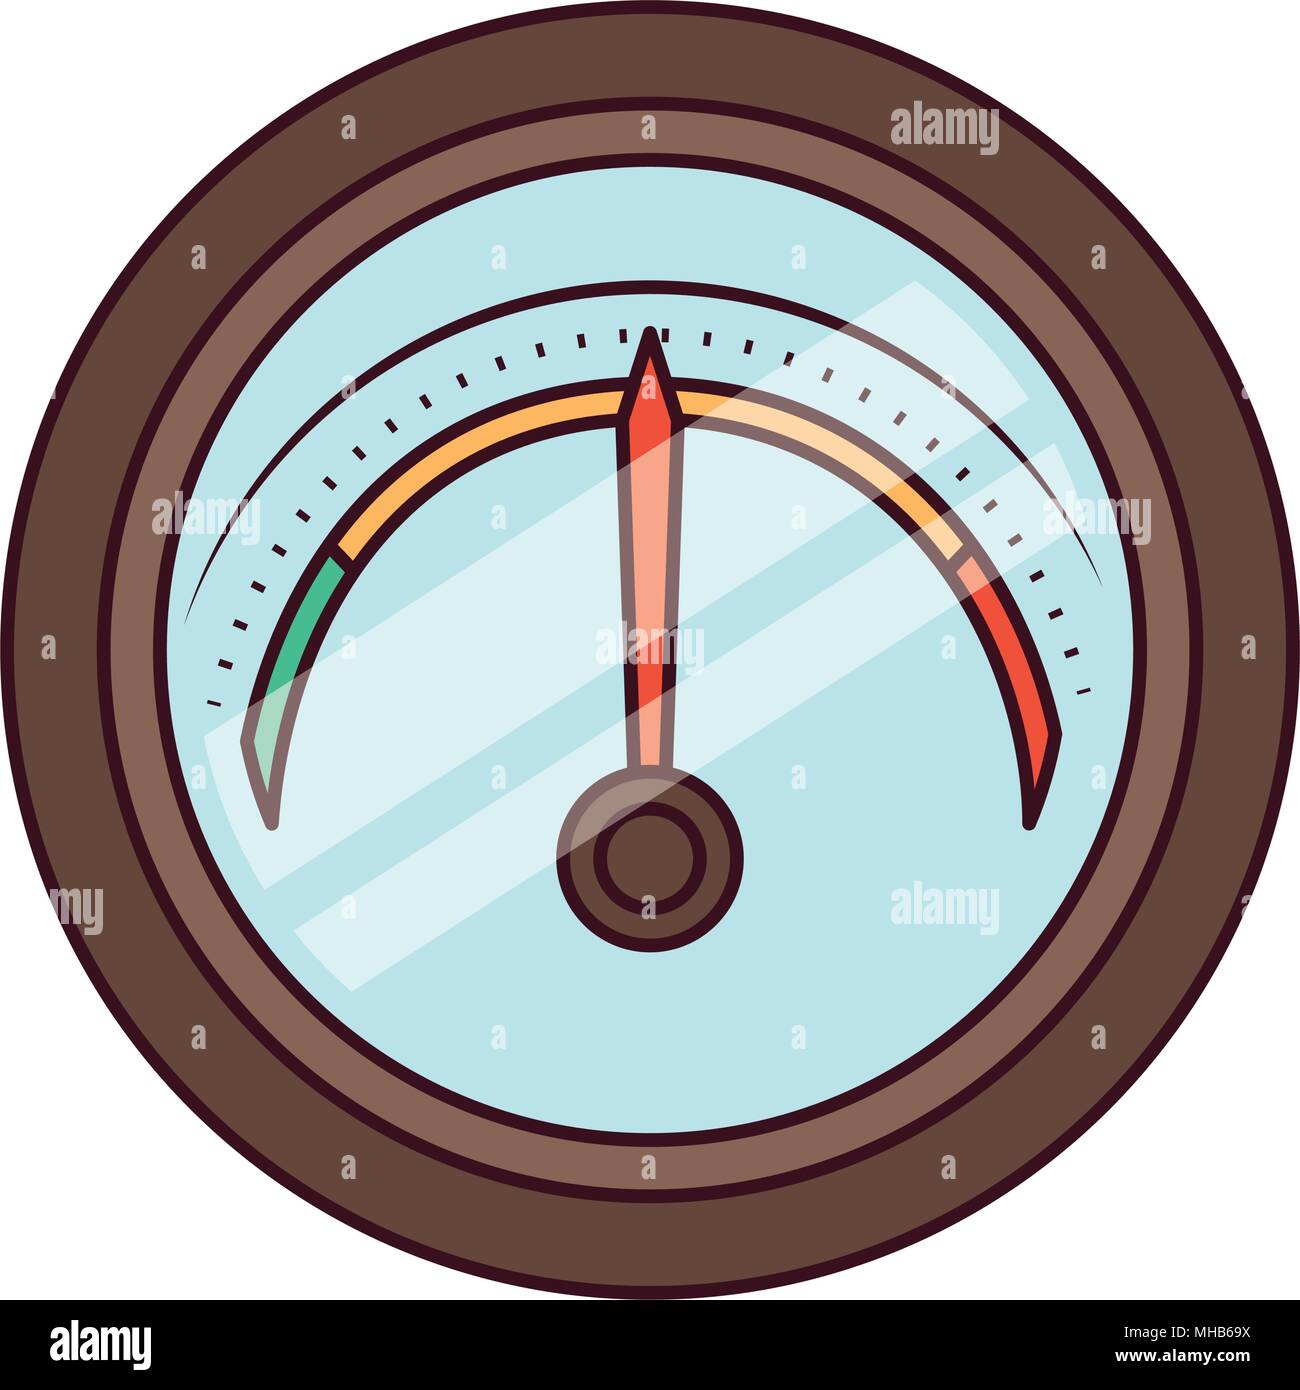 preasure gauge measure icon Stock Vector